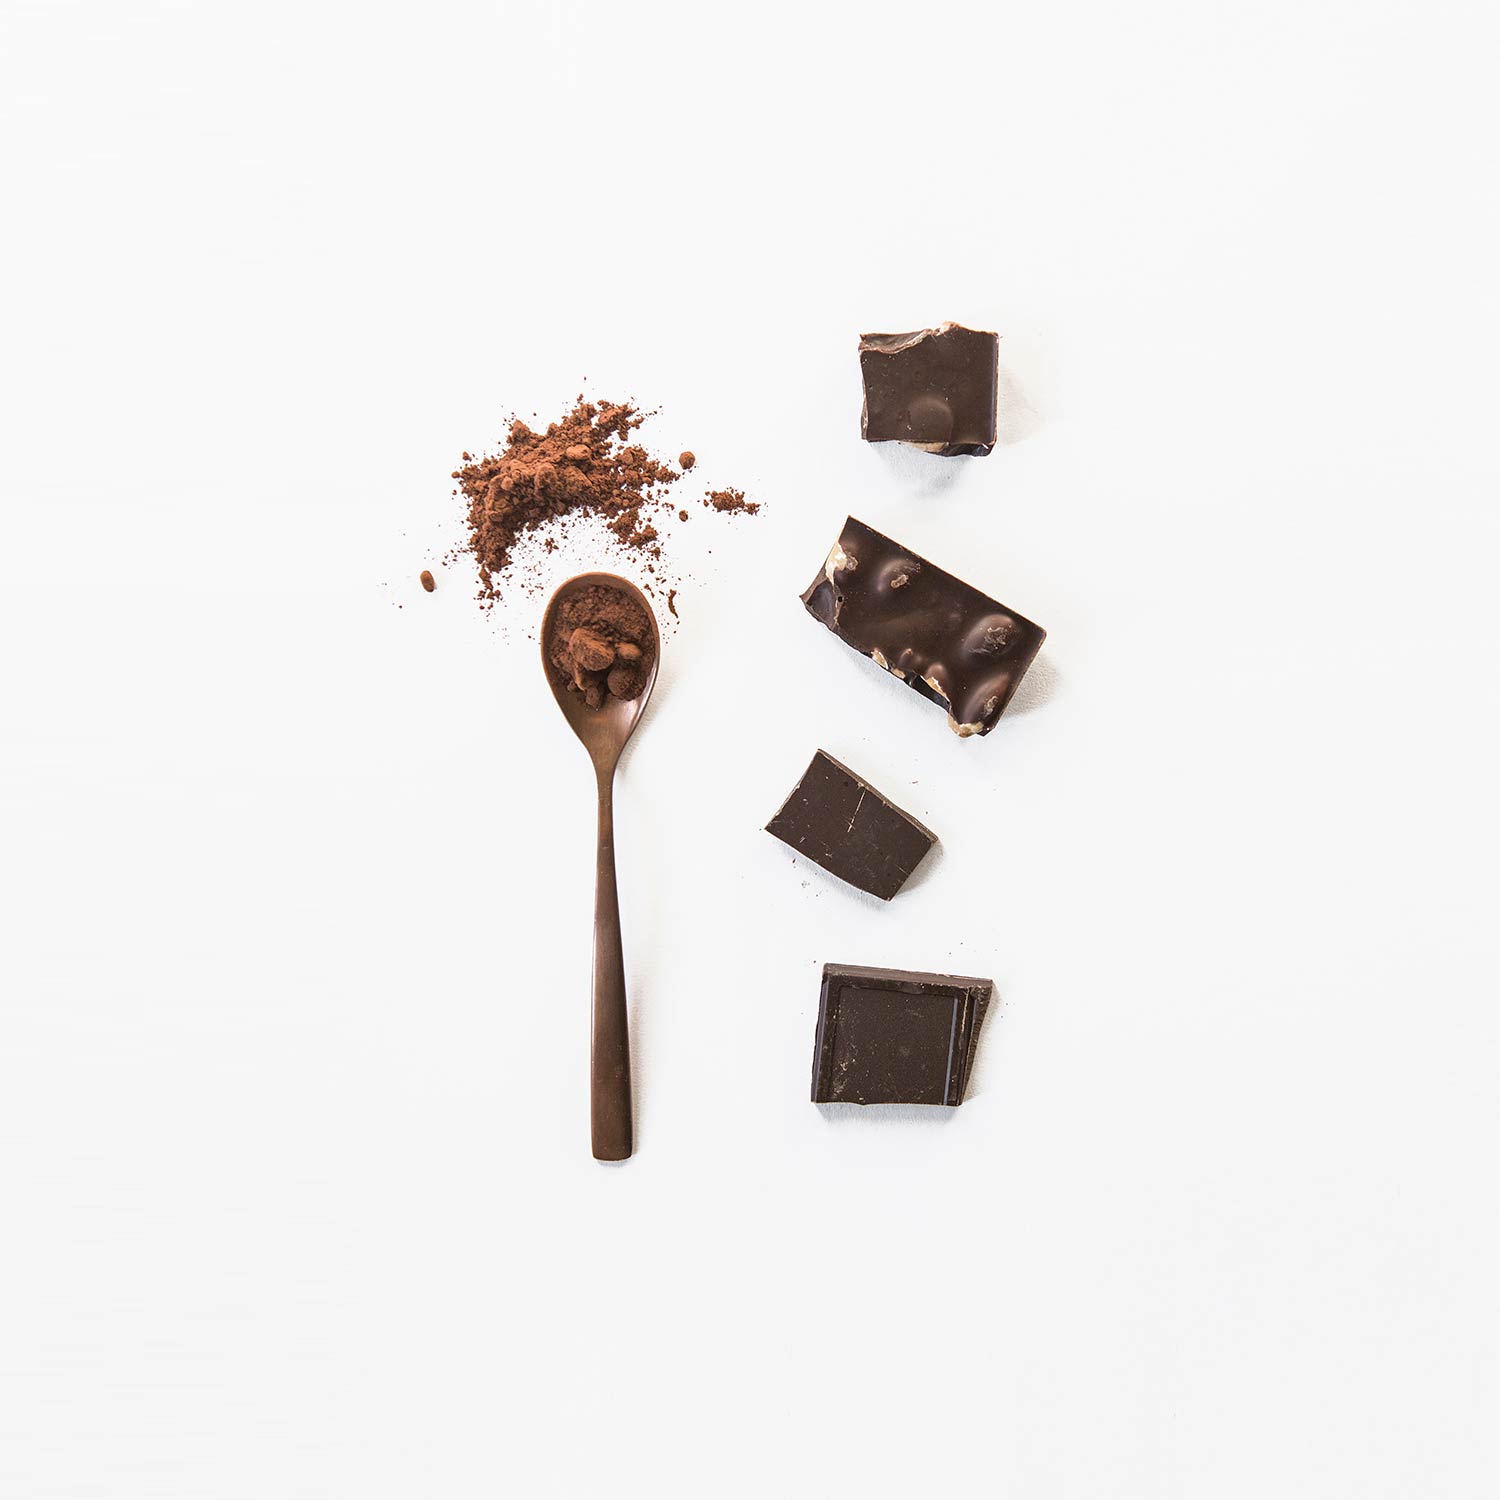 Trozos de chocolate puro con almendras junto a una cuchara con chocolate en polvo sobre fondo blanco. Poppyns Magazine